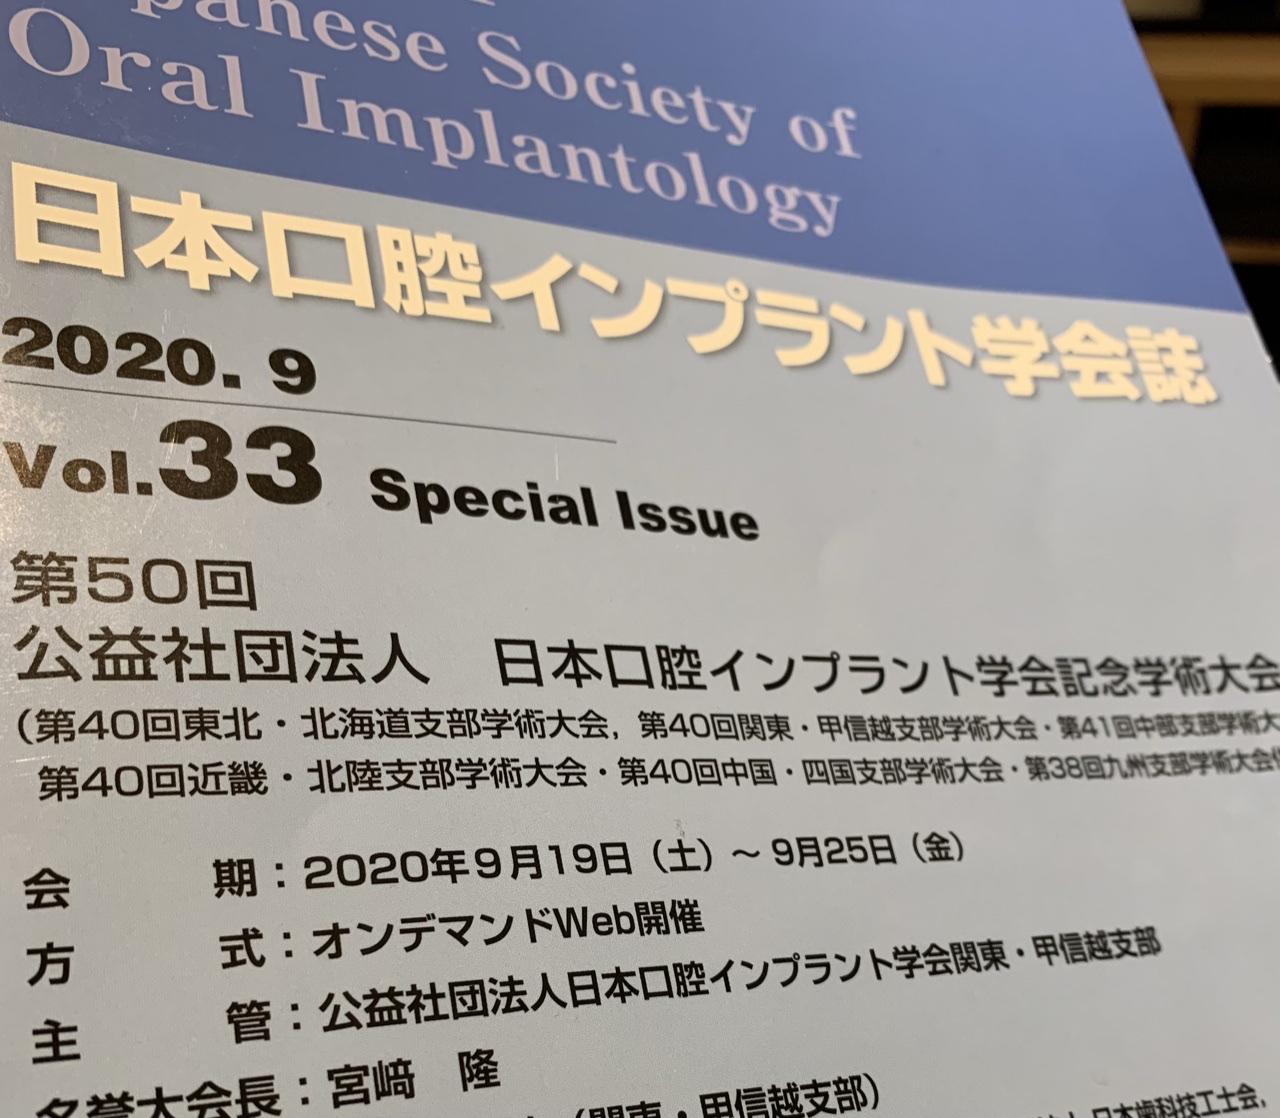 日本口腔インプラント学会2020